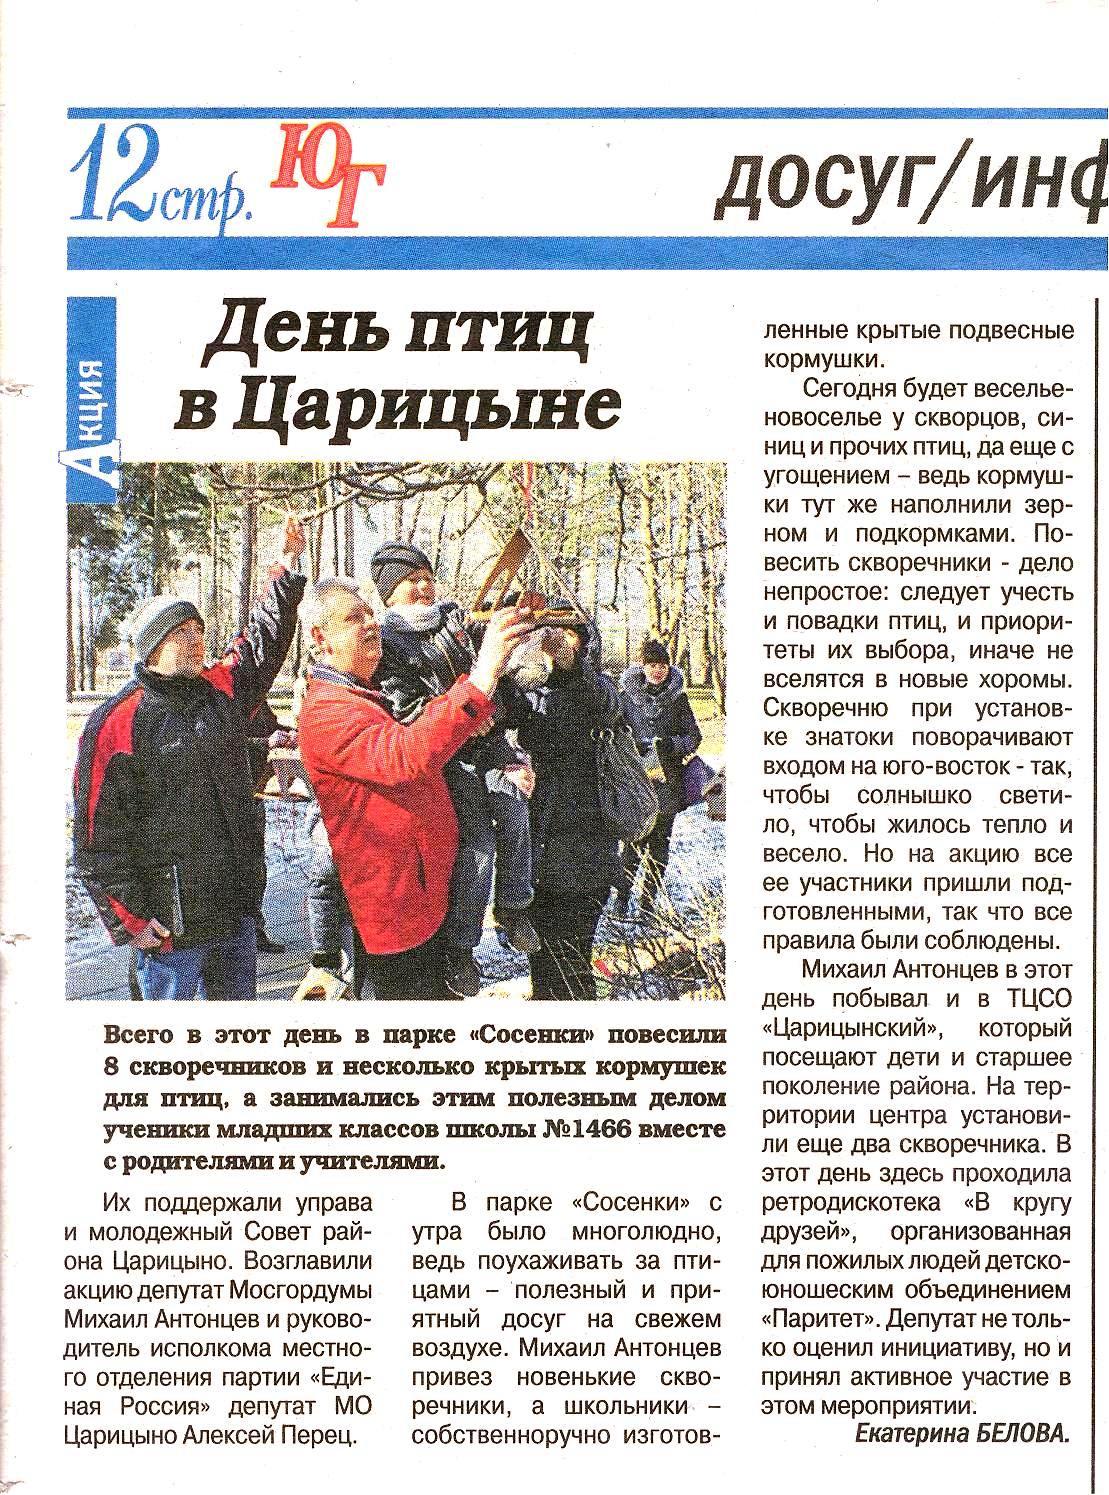 «День птиц в Царицыне», Газета «Южные горизонты» № 11 (612) 14-20 апреля 2014 года